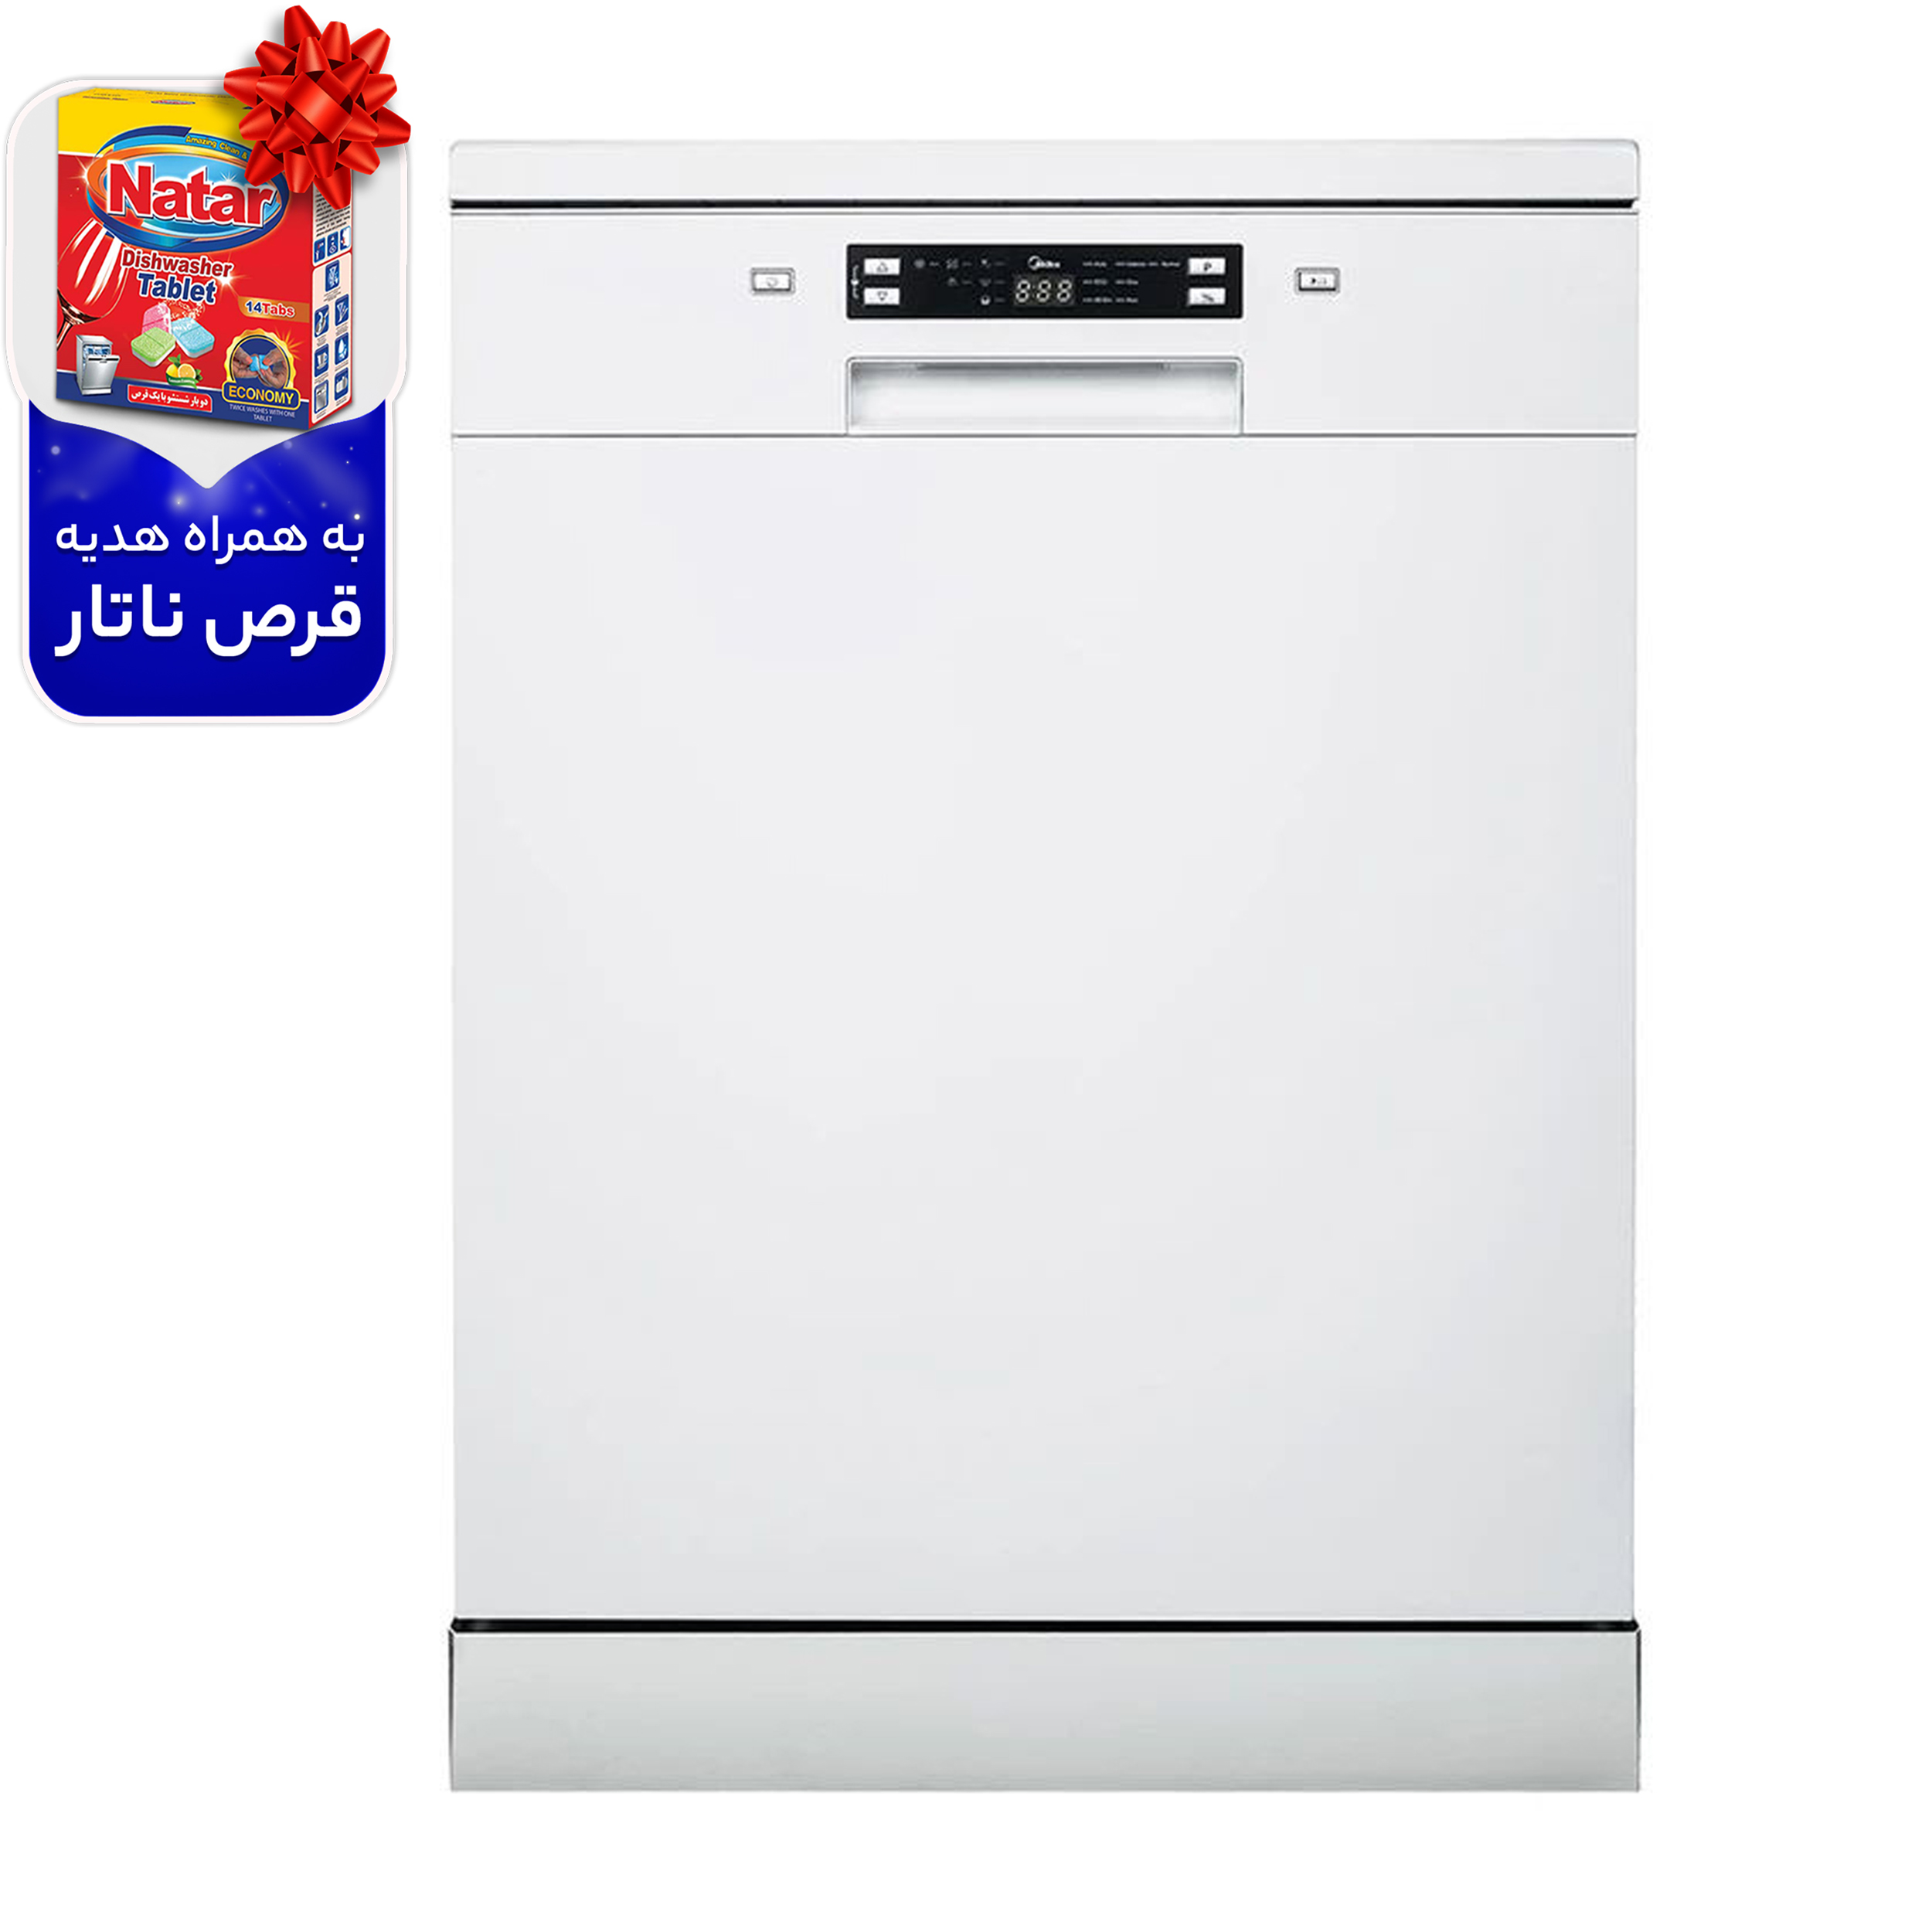 نکته خرید - قیمت روز ماشین ظرفشویی جی پلاس مدل GDW-M4573W خرید